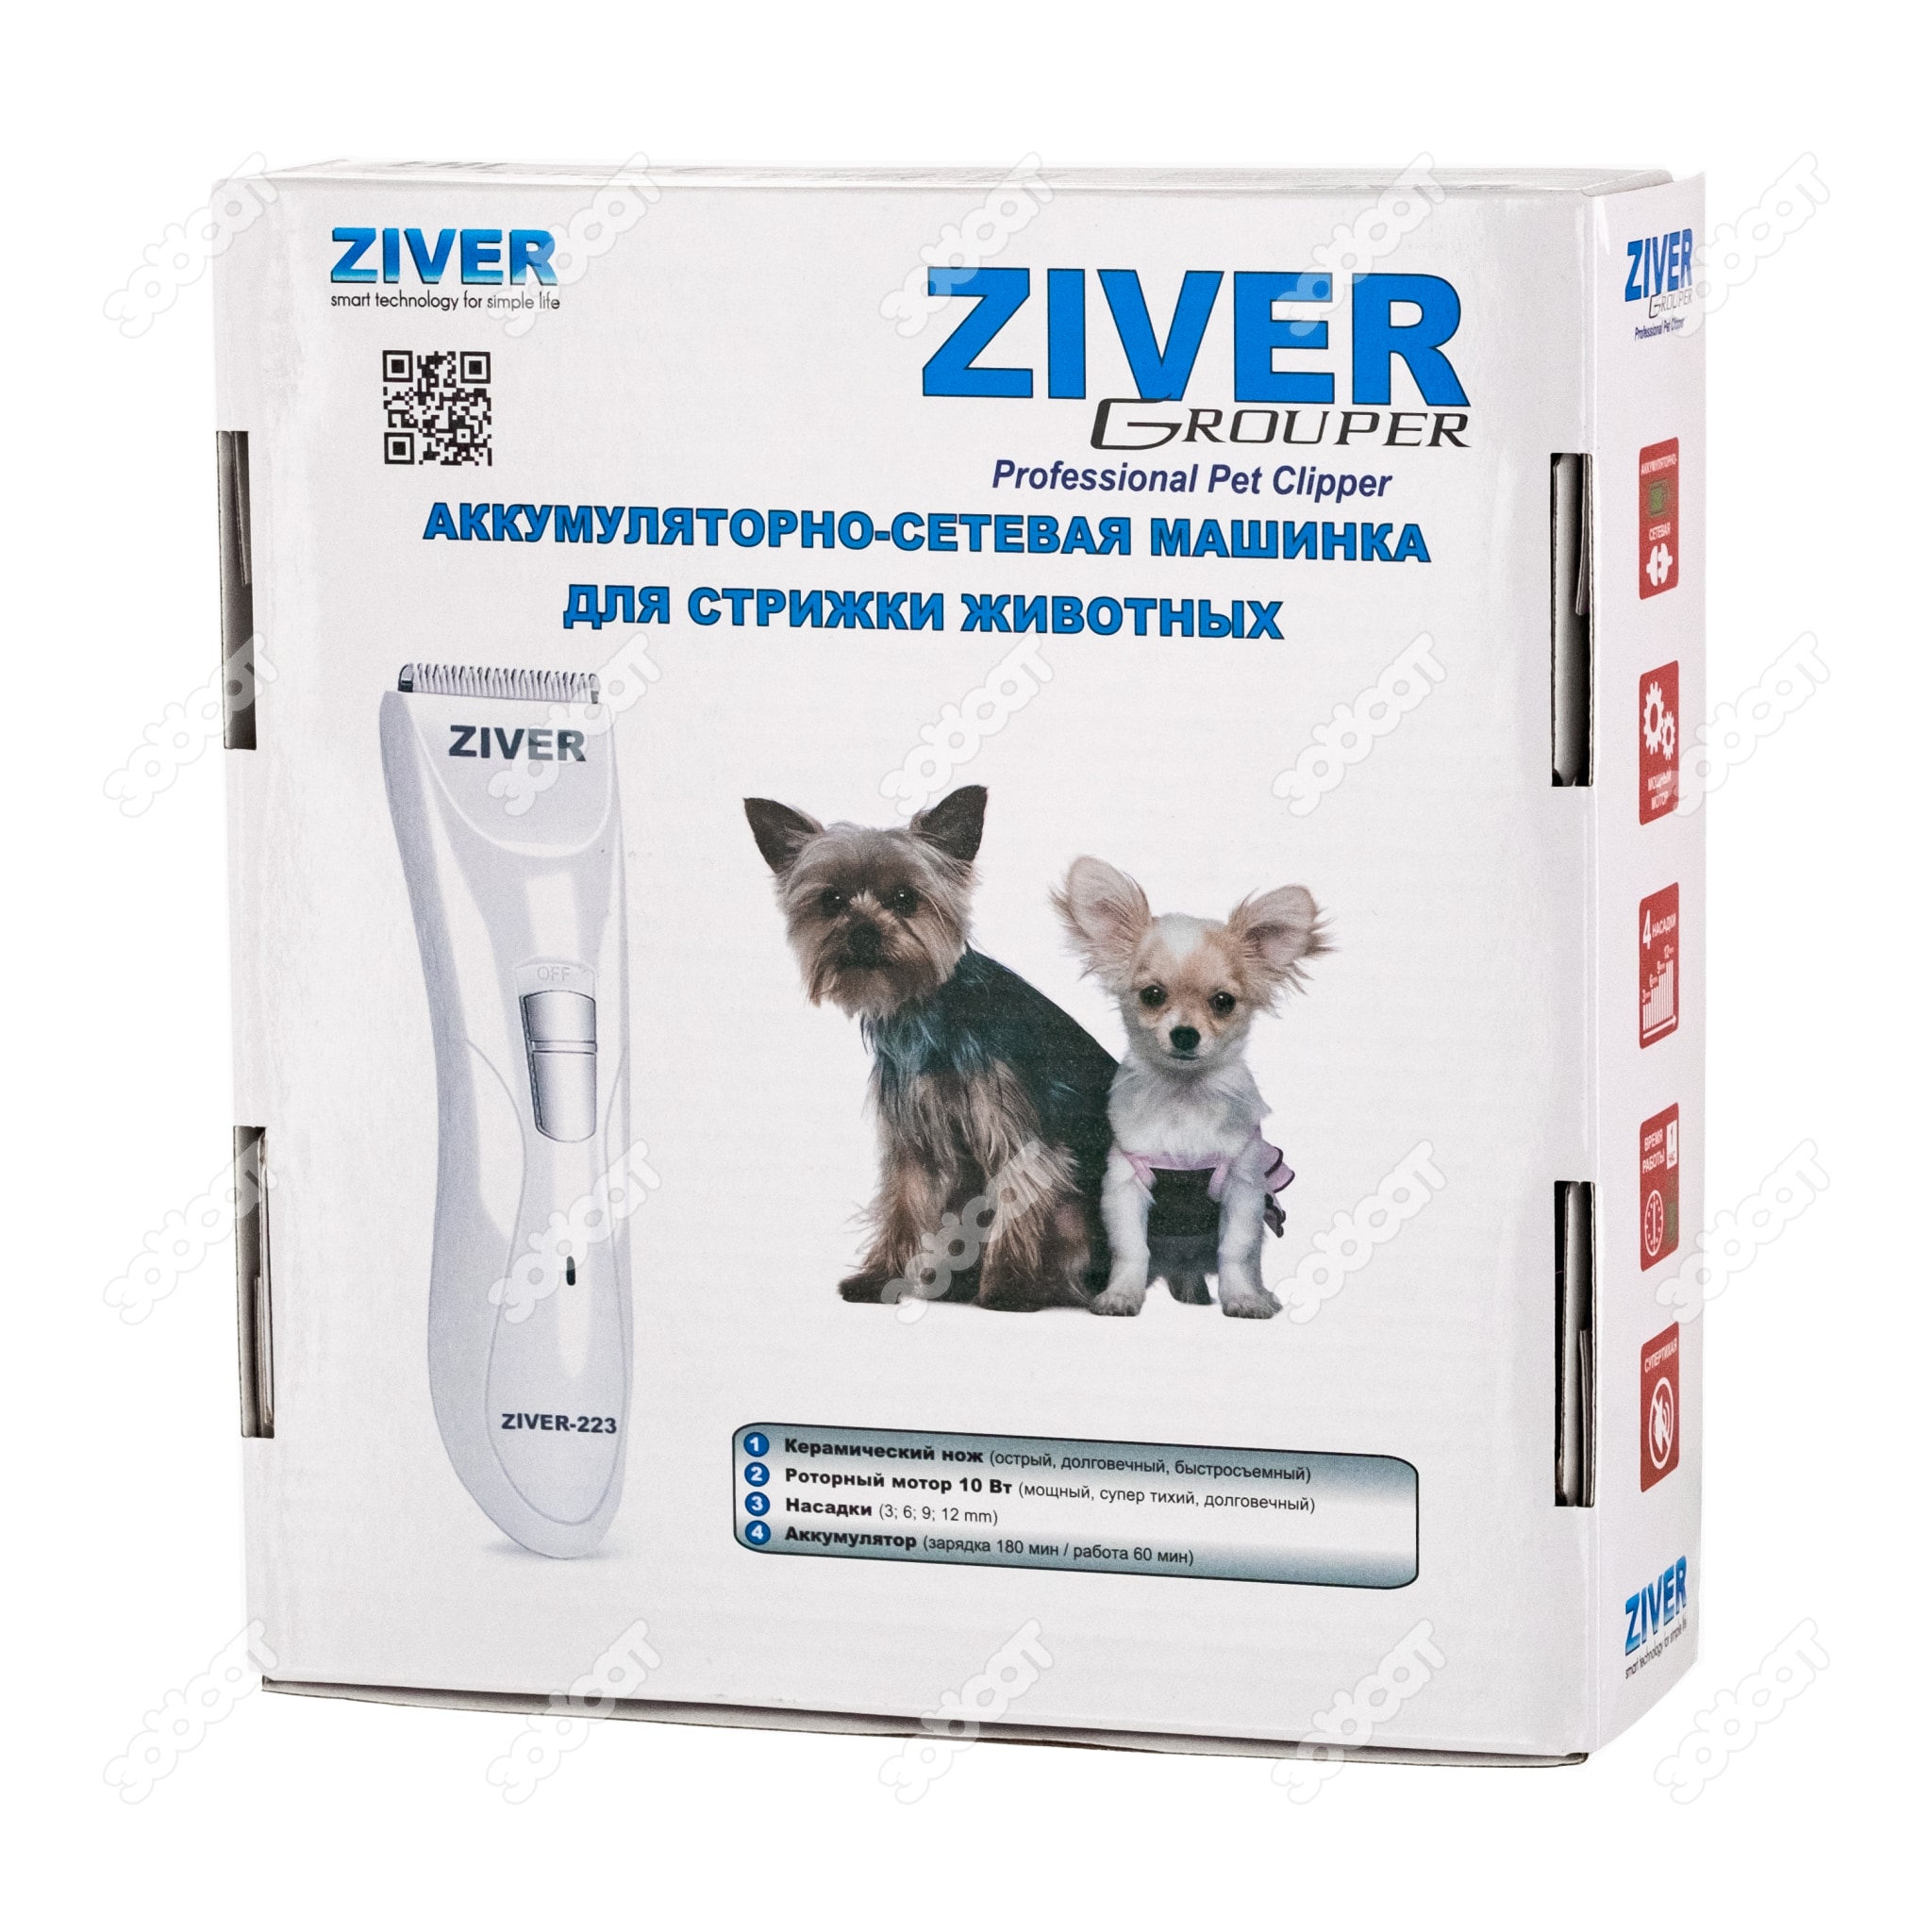 Машинка для стрижки животных ZIVER-223 Grouper